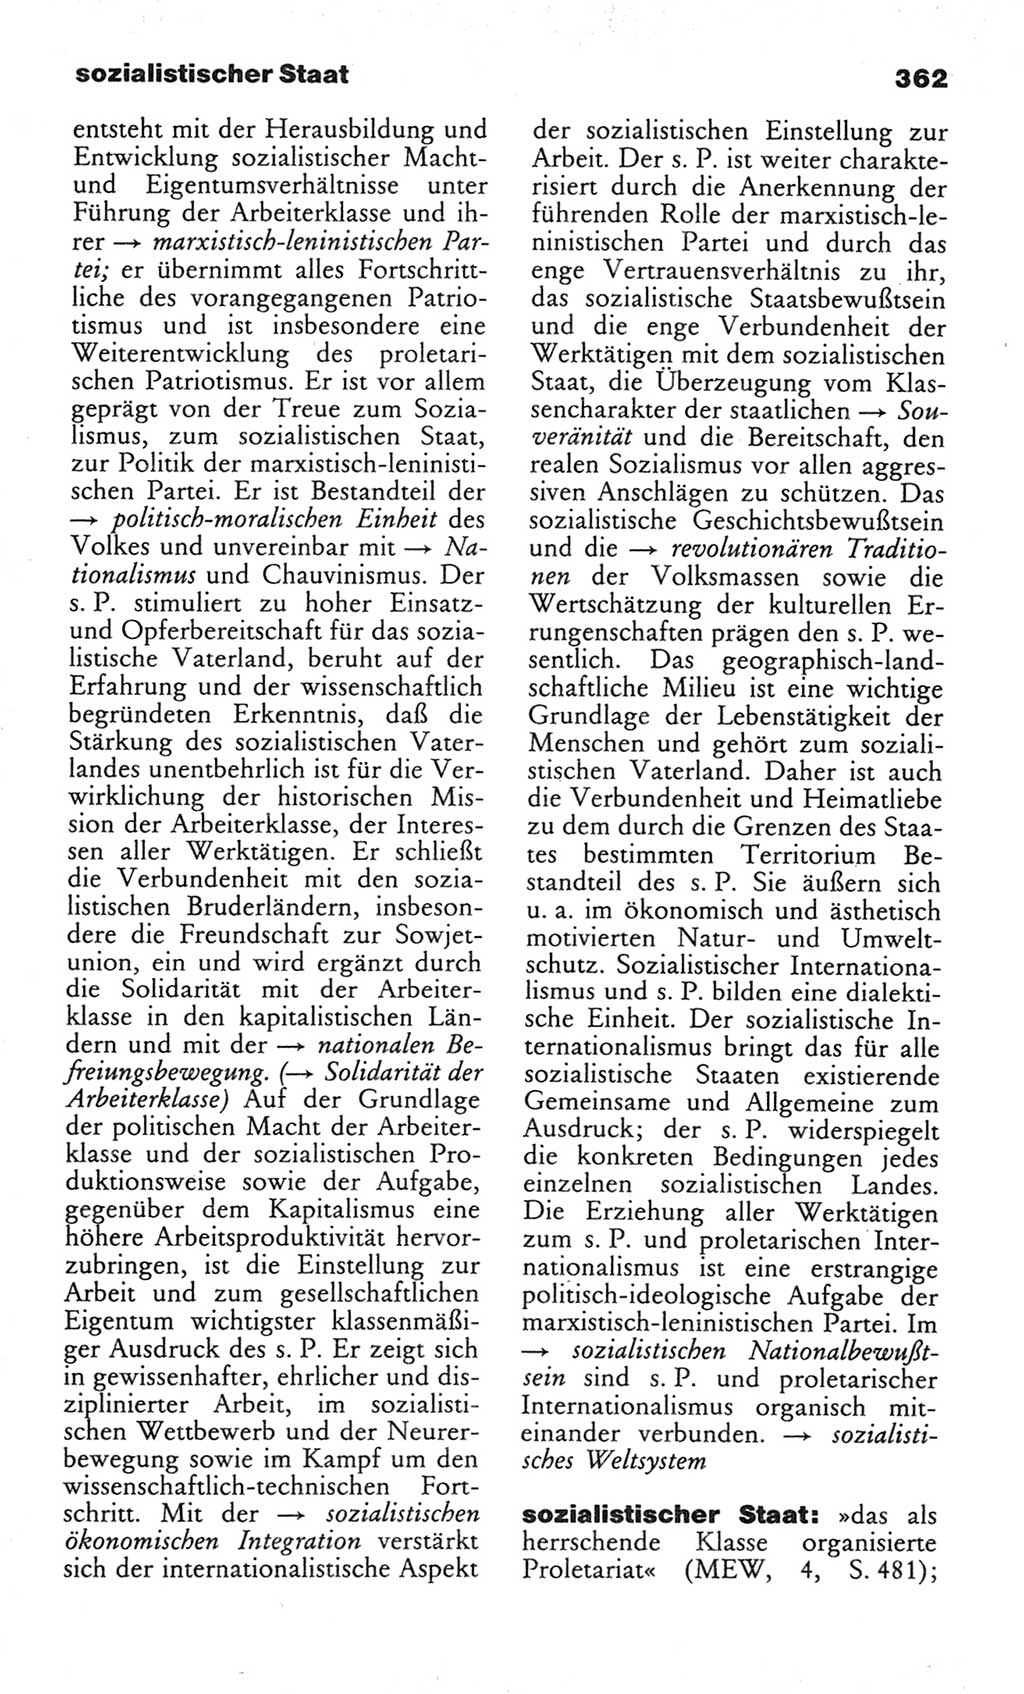 Wörterbuch des wissenschaftlichen Kommunismus [Deutsche Demokratische Republik (DDR)] 1982, Seite 362 (Wb. wiss. Komm. DDR 1982, S. 362)